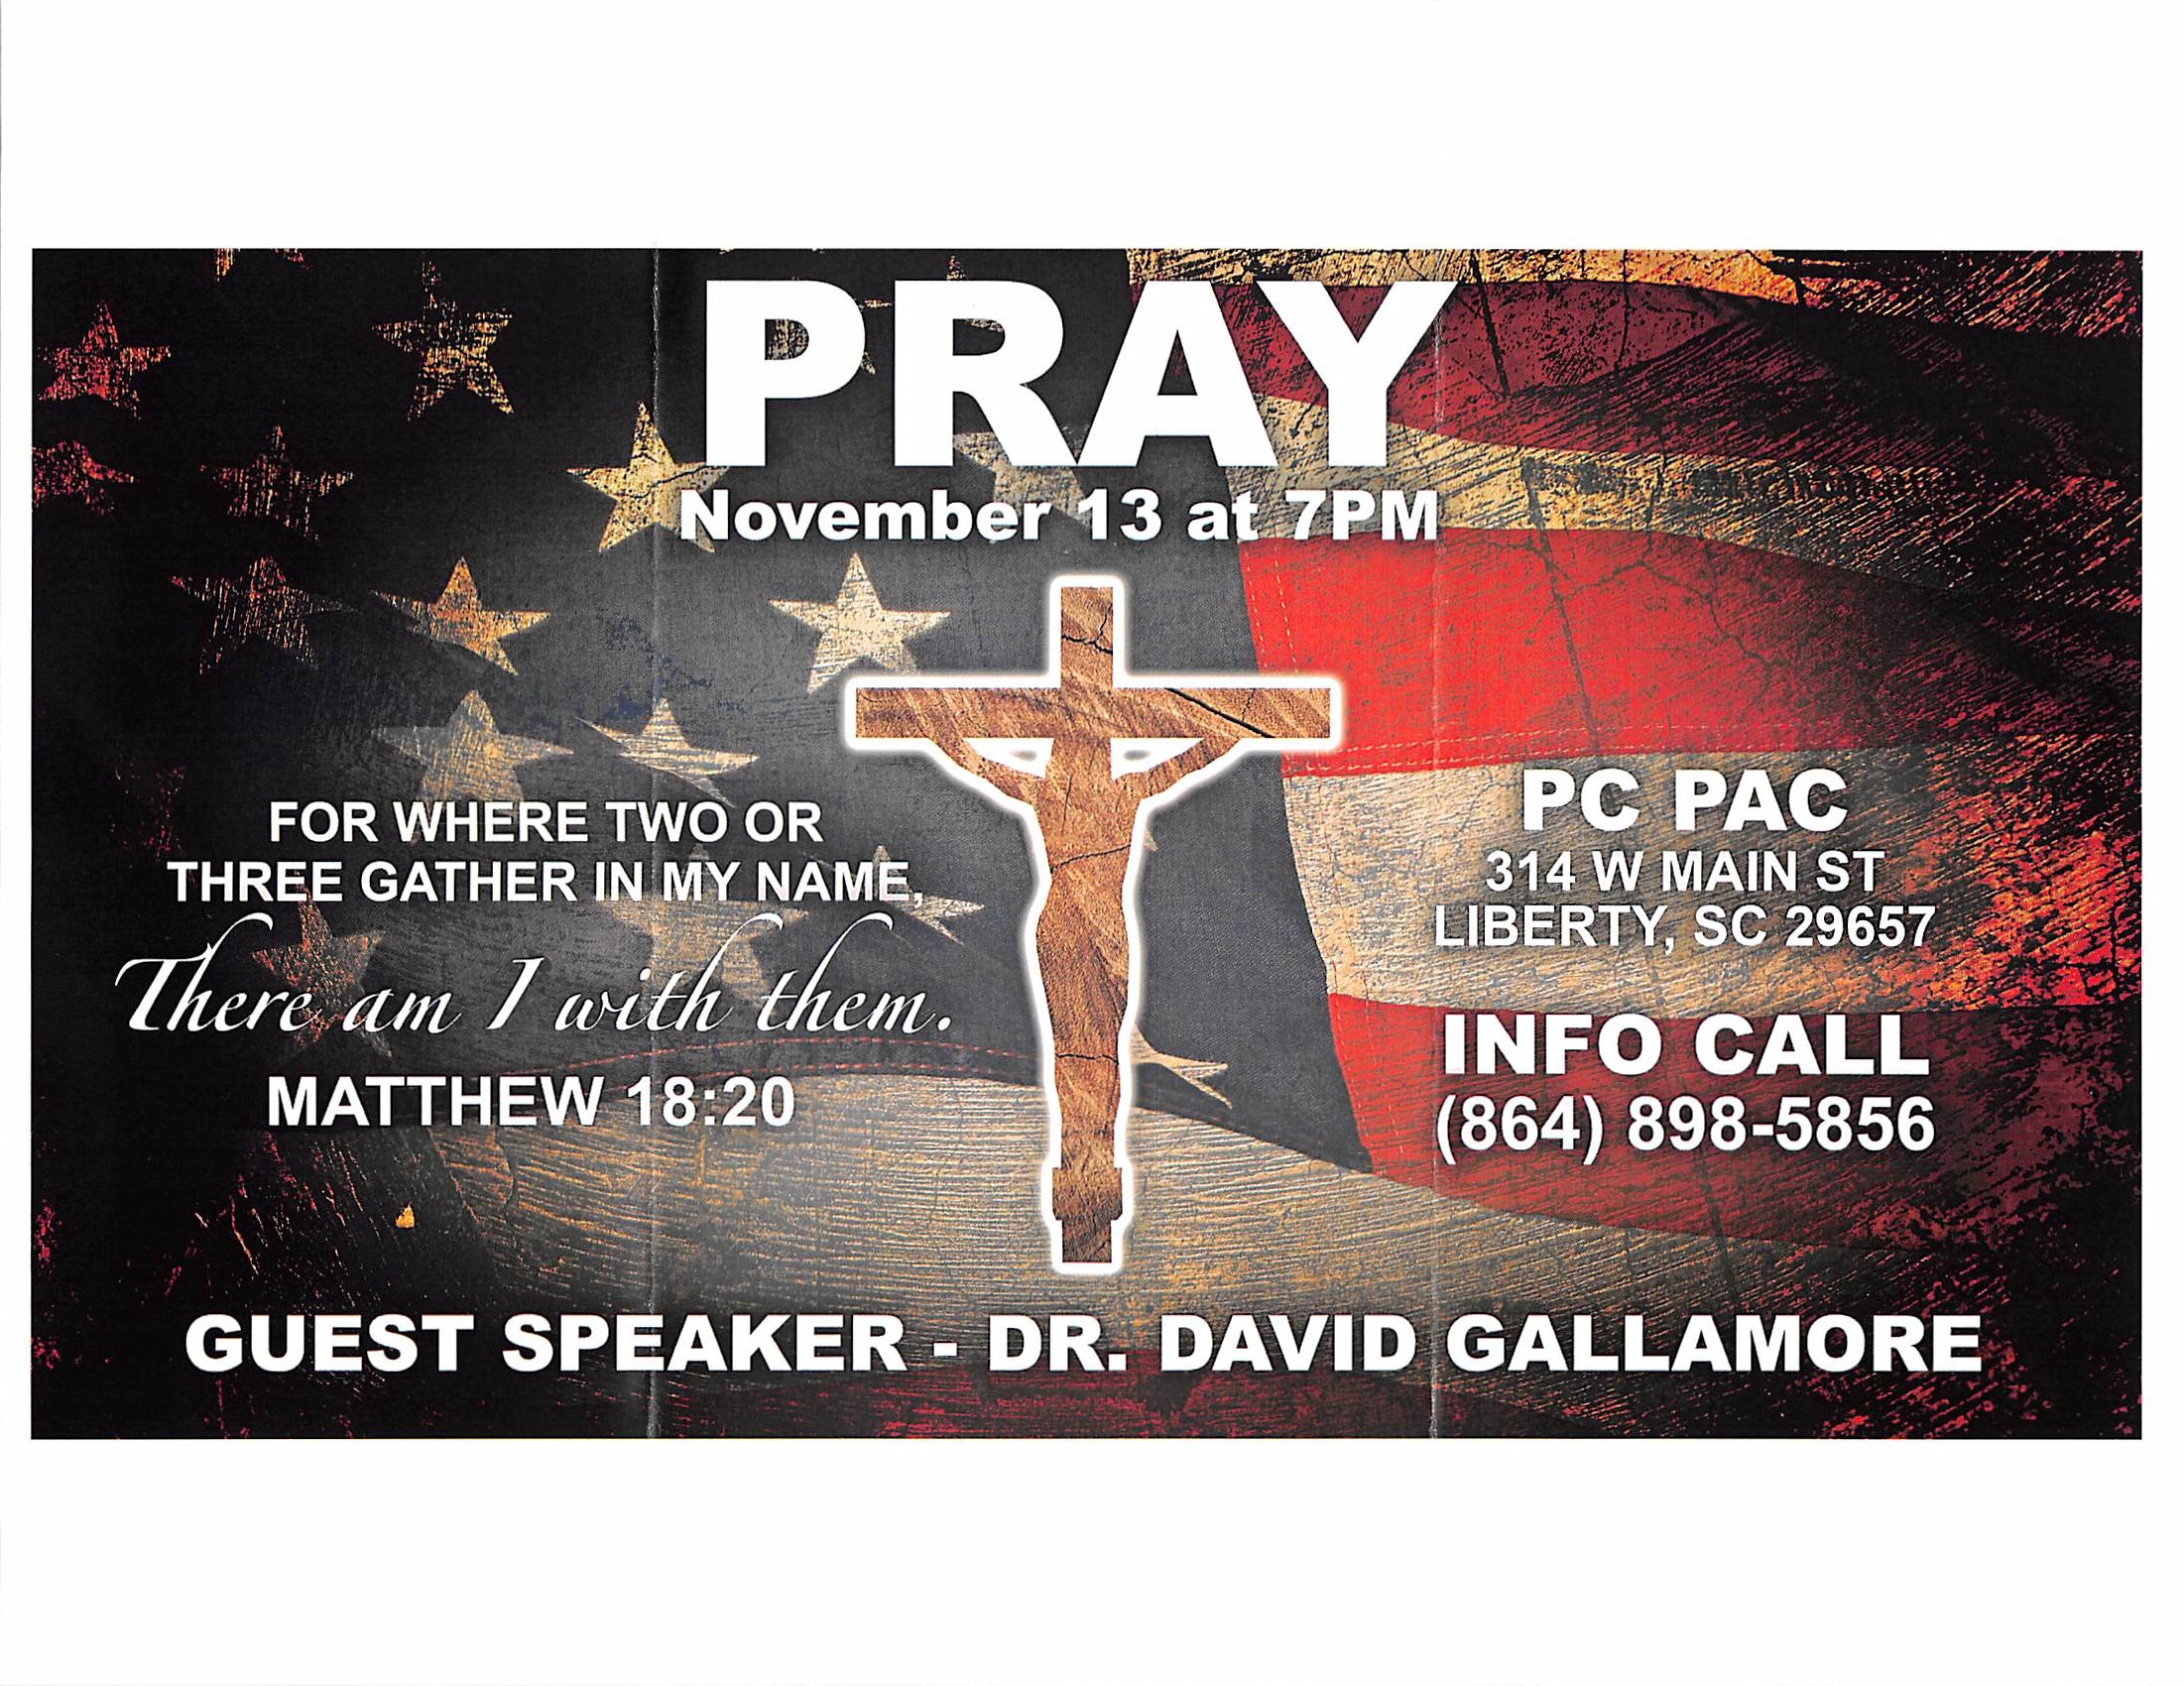 Pray November 13th, 2018 at 7pm at Pickens County Performing Arts Center